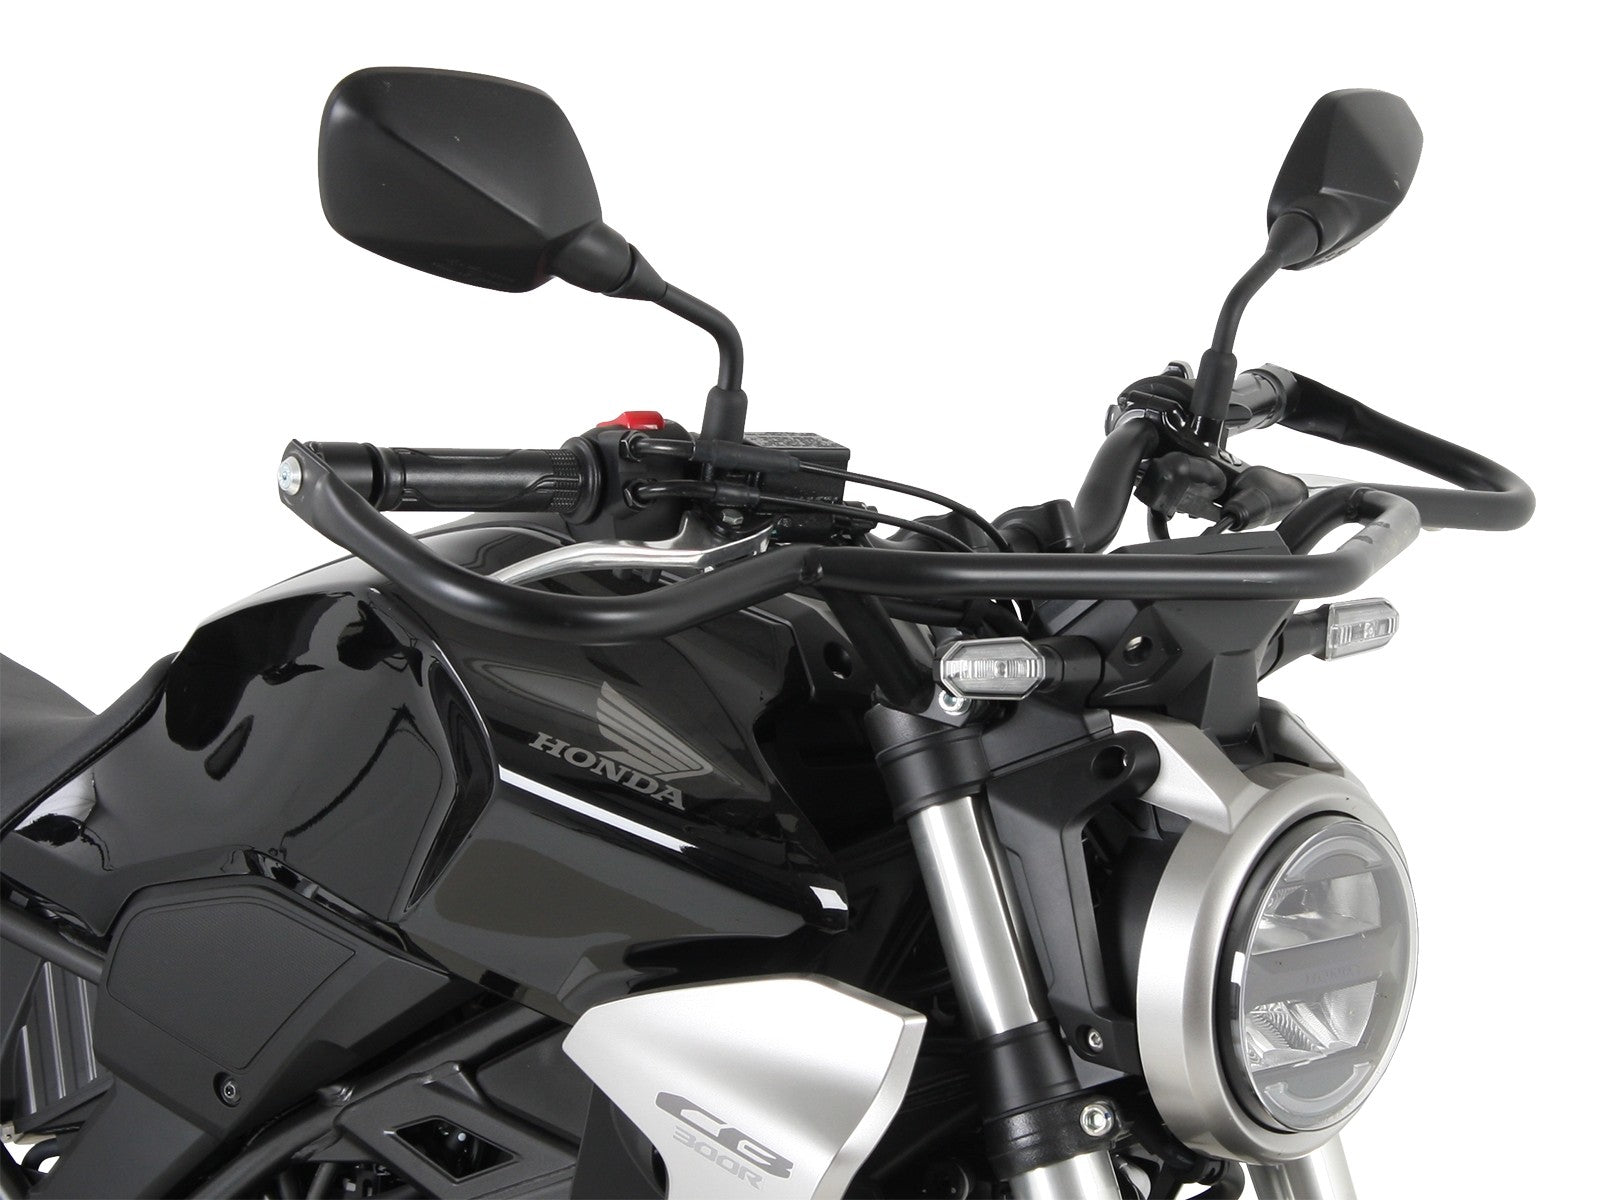 Paire de Protèges mains BODYSTYLE HONDA CB 125 R CB 300 R NEO SPORTS CAFE  protections moto chez equip'moto